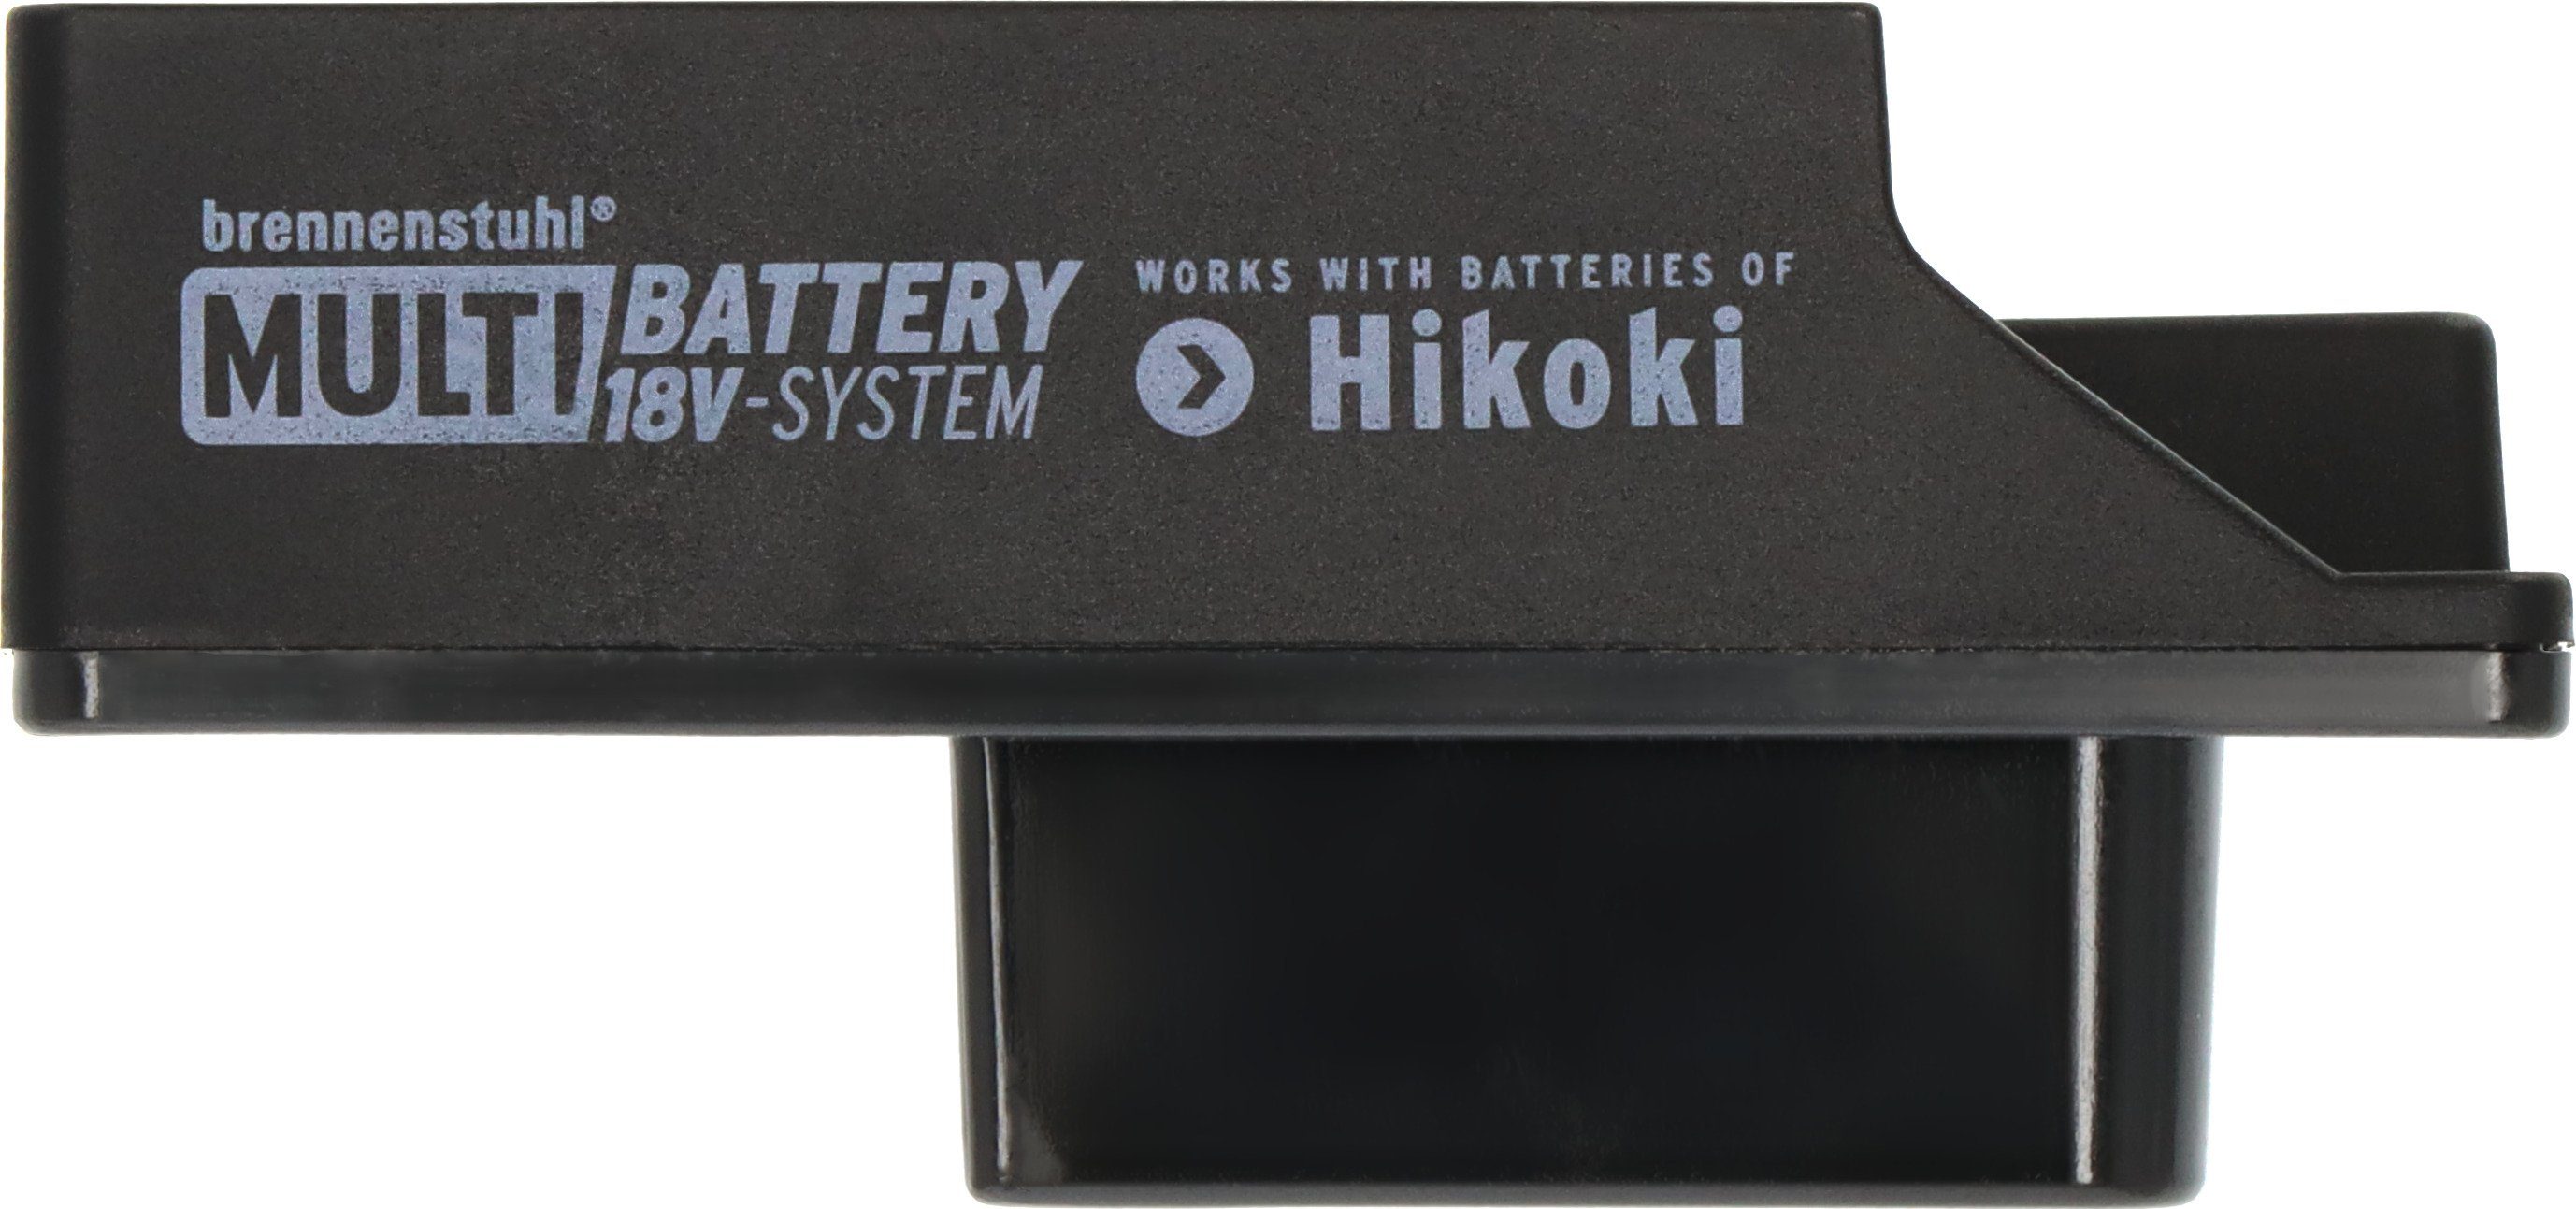 Baustrahler Hikoki System Adapter, LED Multi Battery für Brennenstuhl